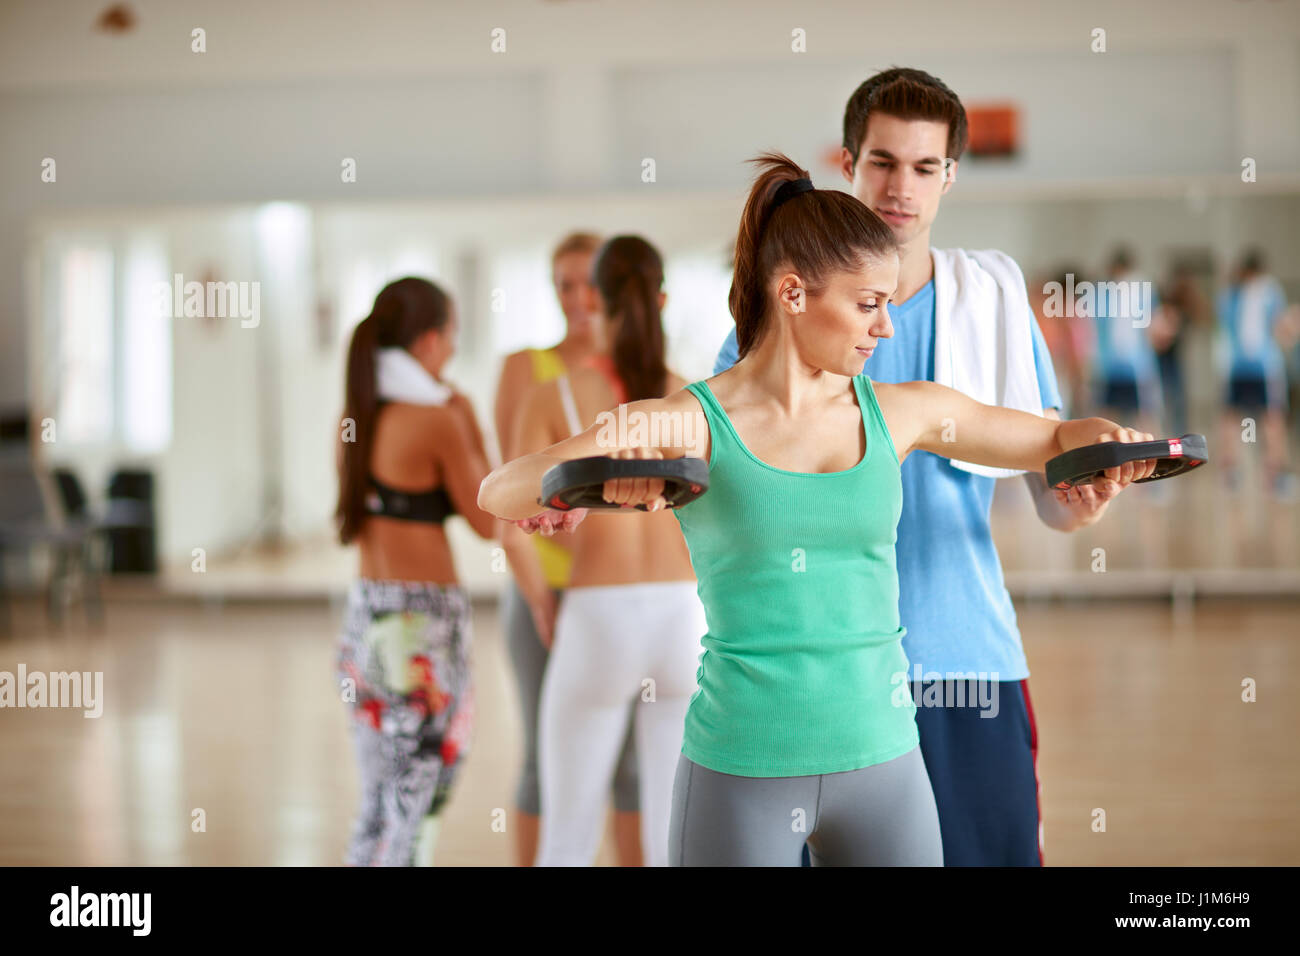 Trainer maschio consente di giovane donna mentre i bracci di pratica con attrezzature per esercizi in palestra Foto Stock